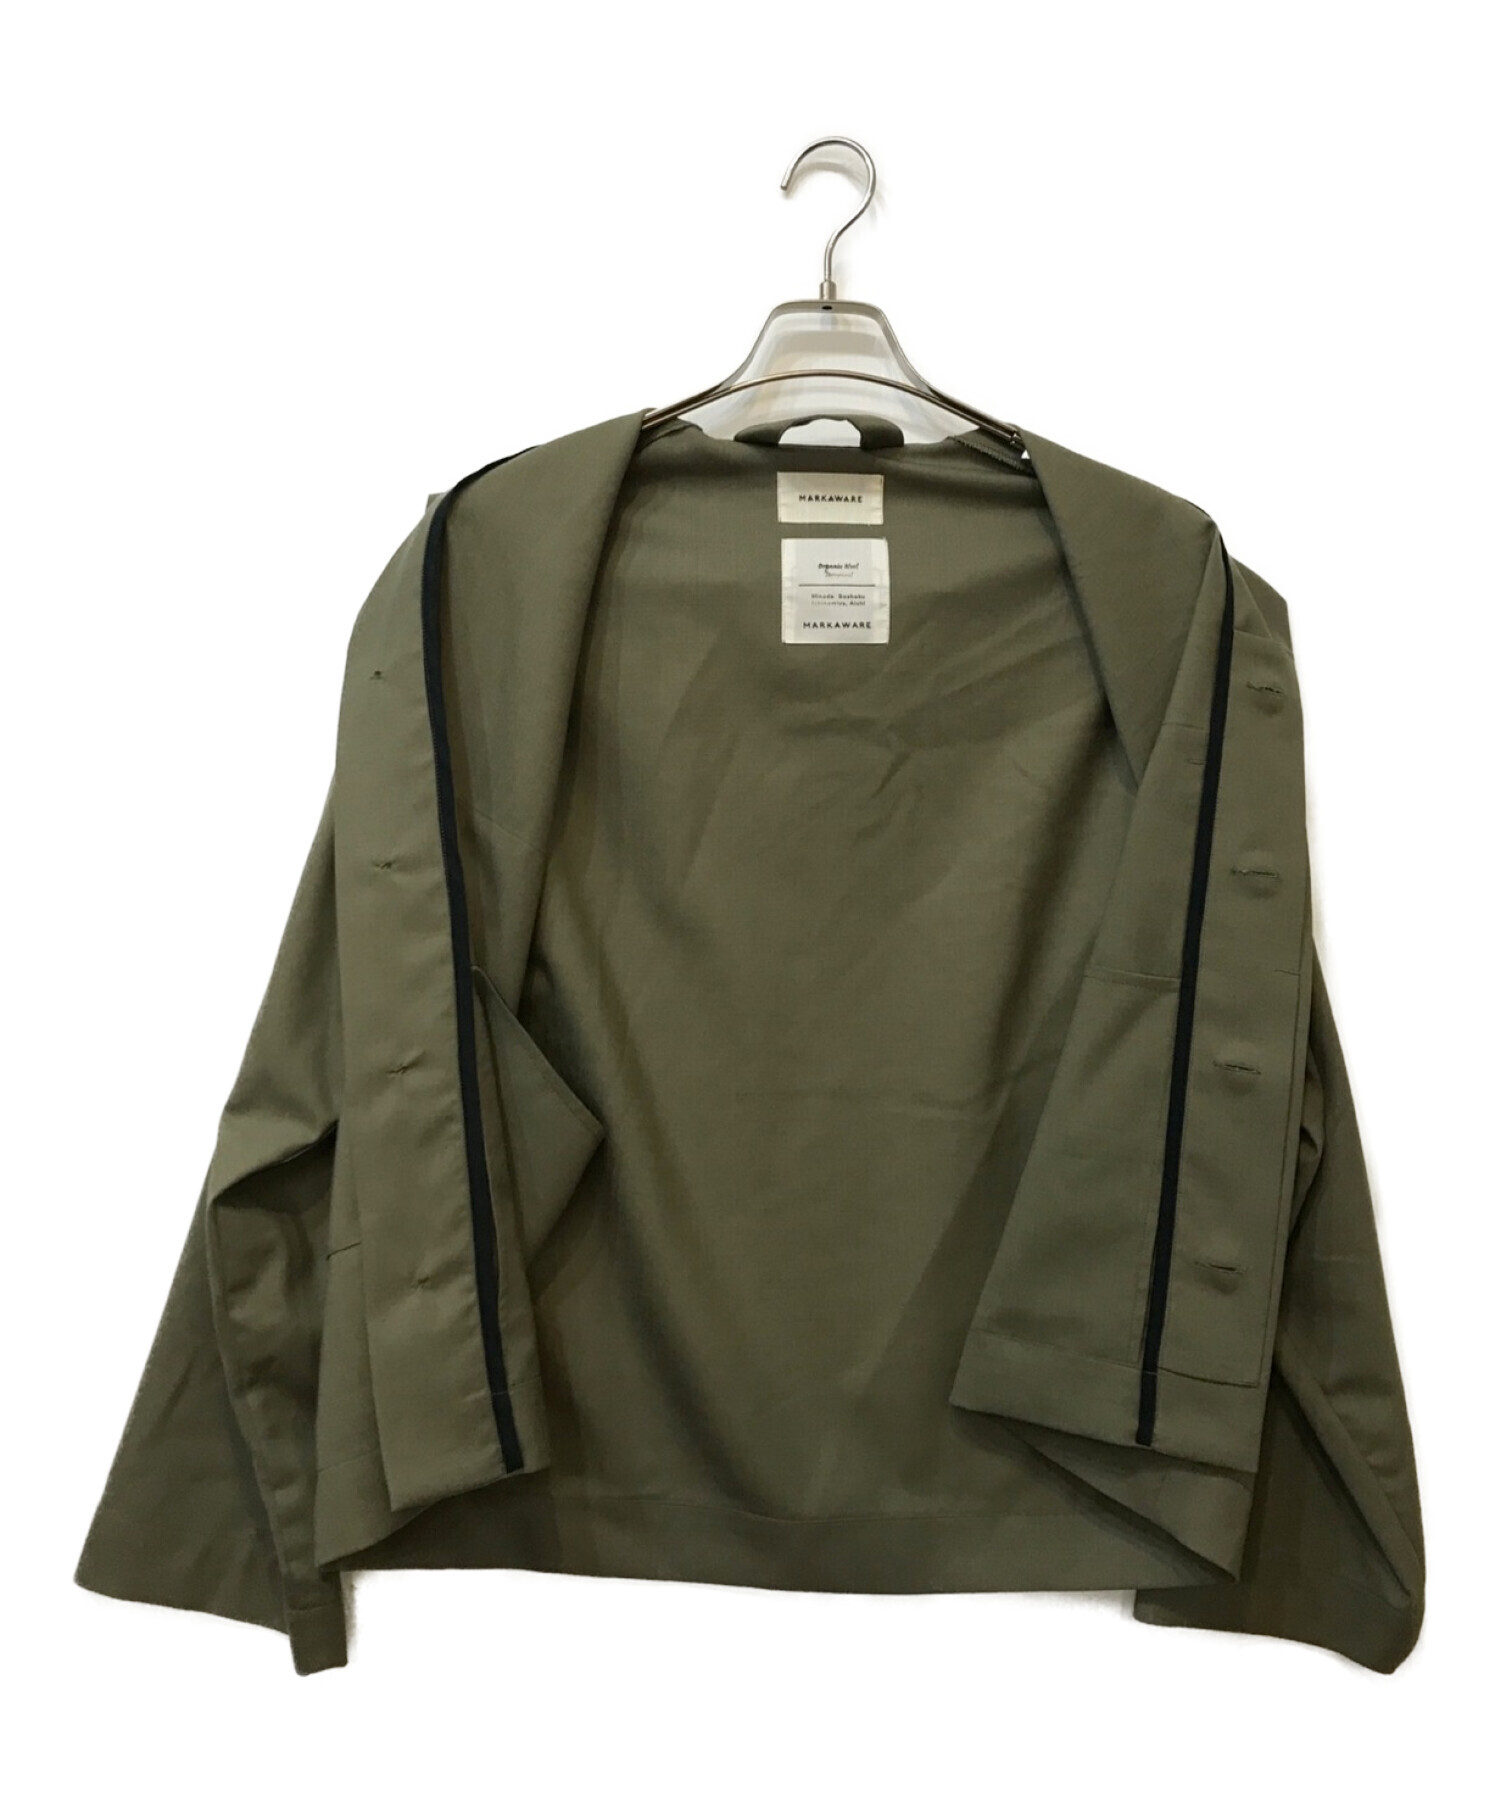 MARKAWARE (マーカウェア) ユーティリティ- CPOシャツジャケット グリーン サイズ:1